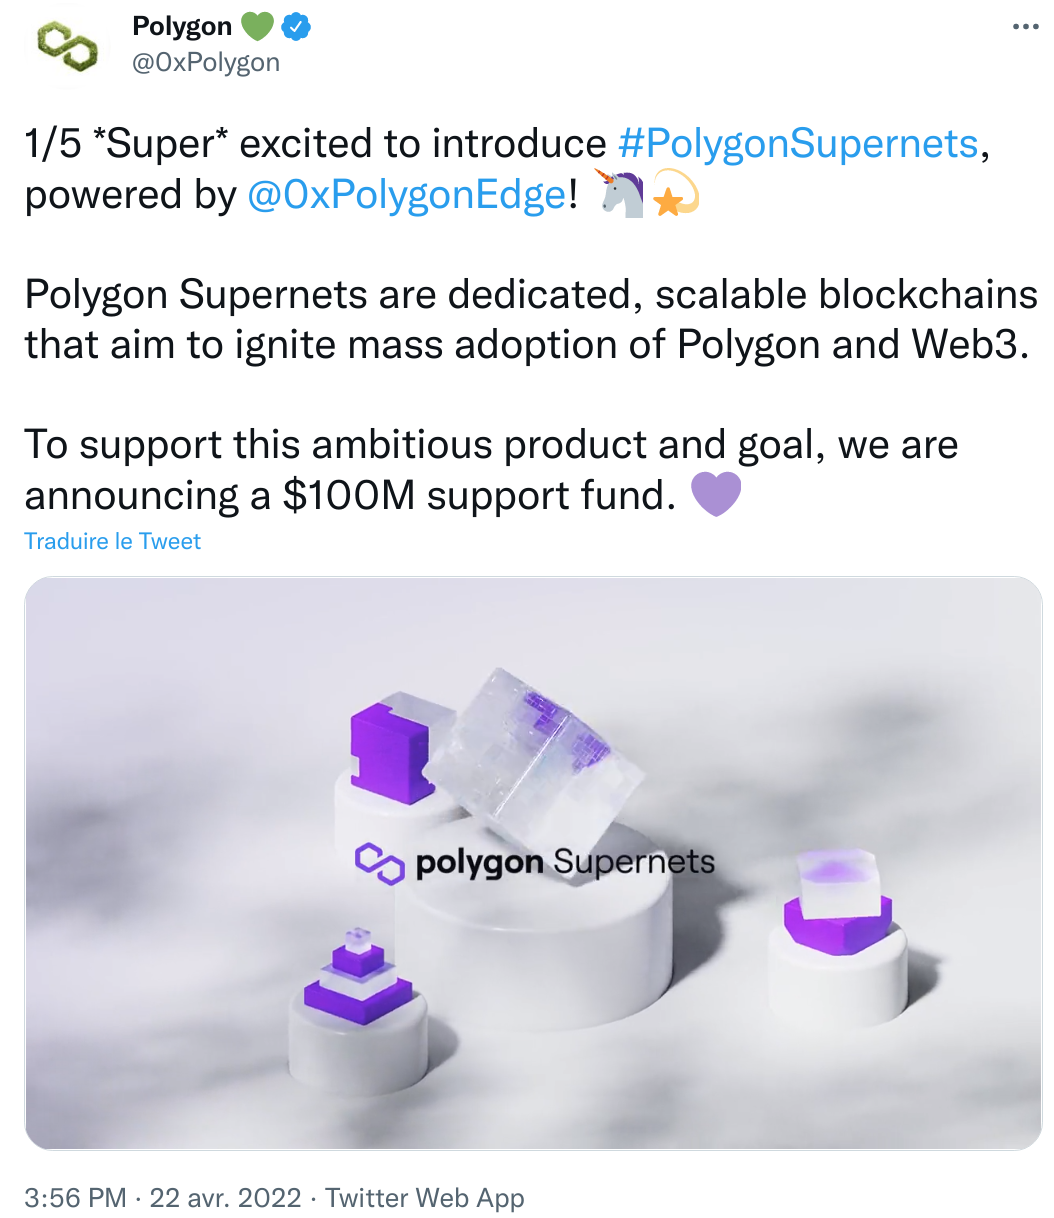 Les Polygon Supernets osnt des blockchains scalables qui visent à initier the adoption de Polygon et du Web3 